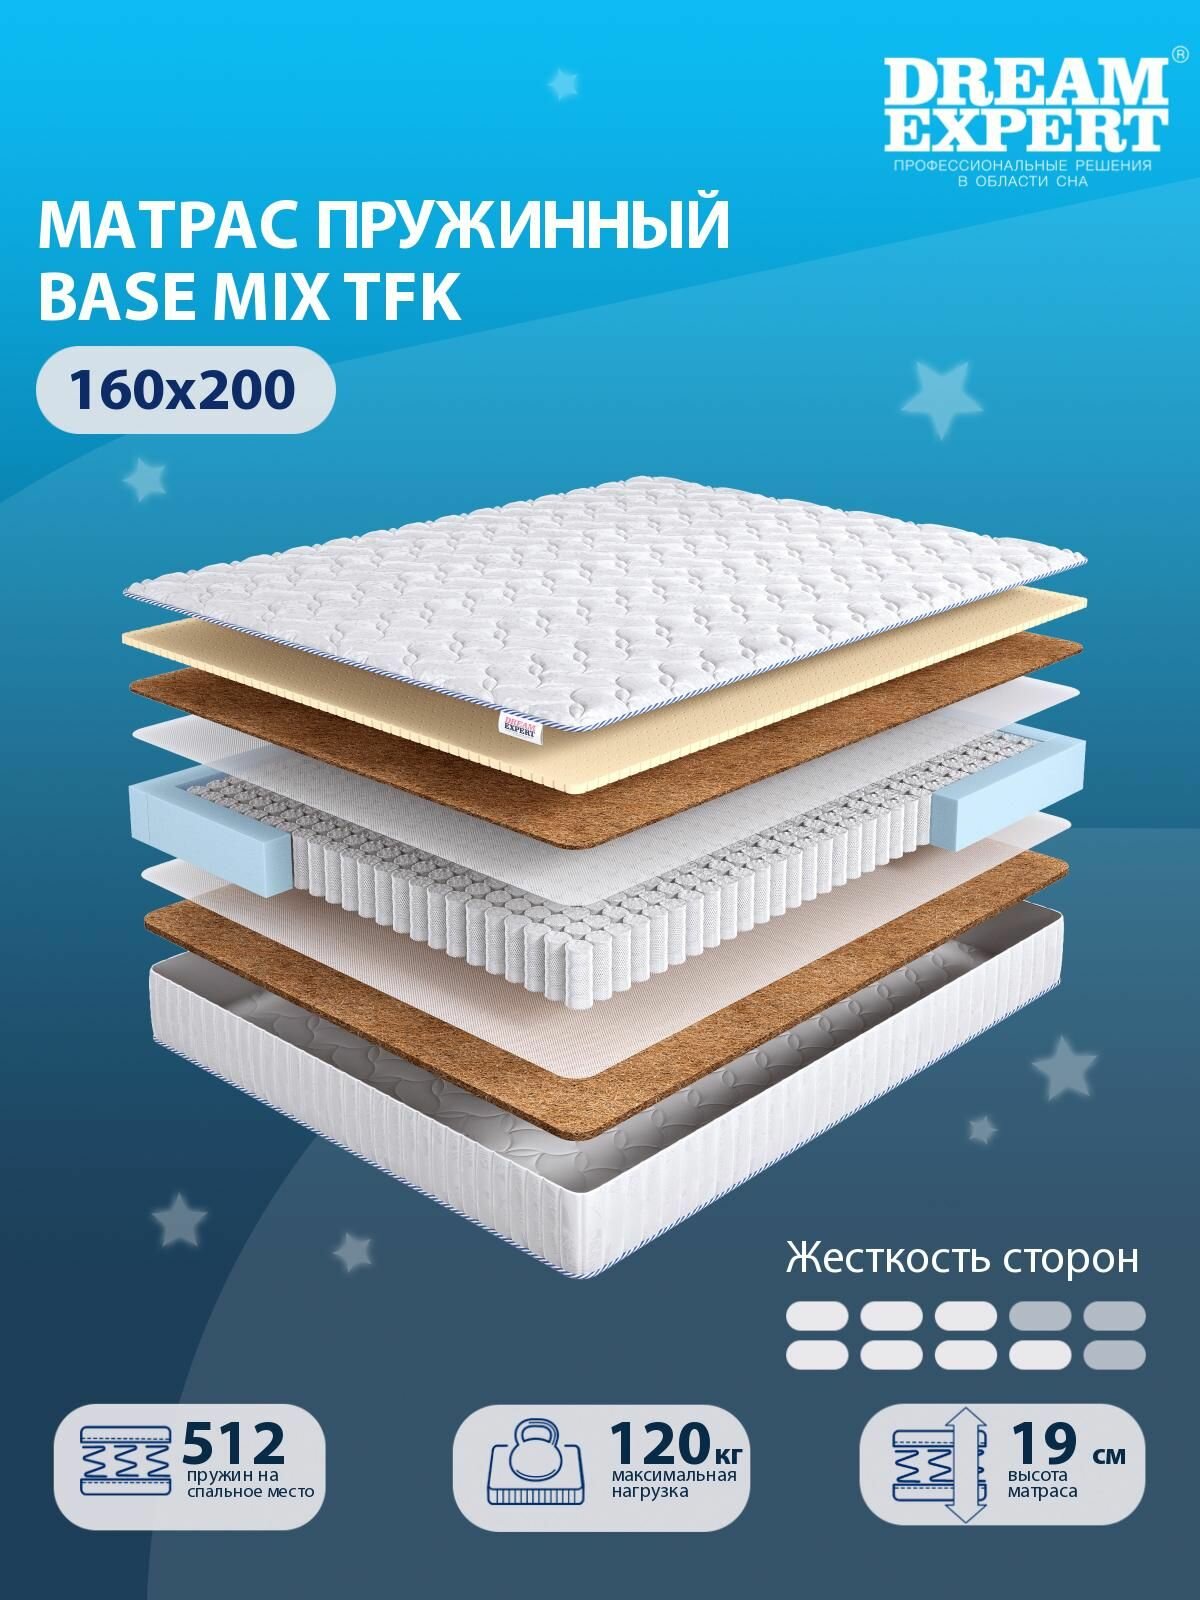 Матрас DreamExpert Base Mix TFK средней и выше средней жесткости, двуспальный, независимый пружинный блок, на кровать 160x200